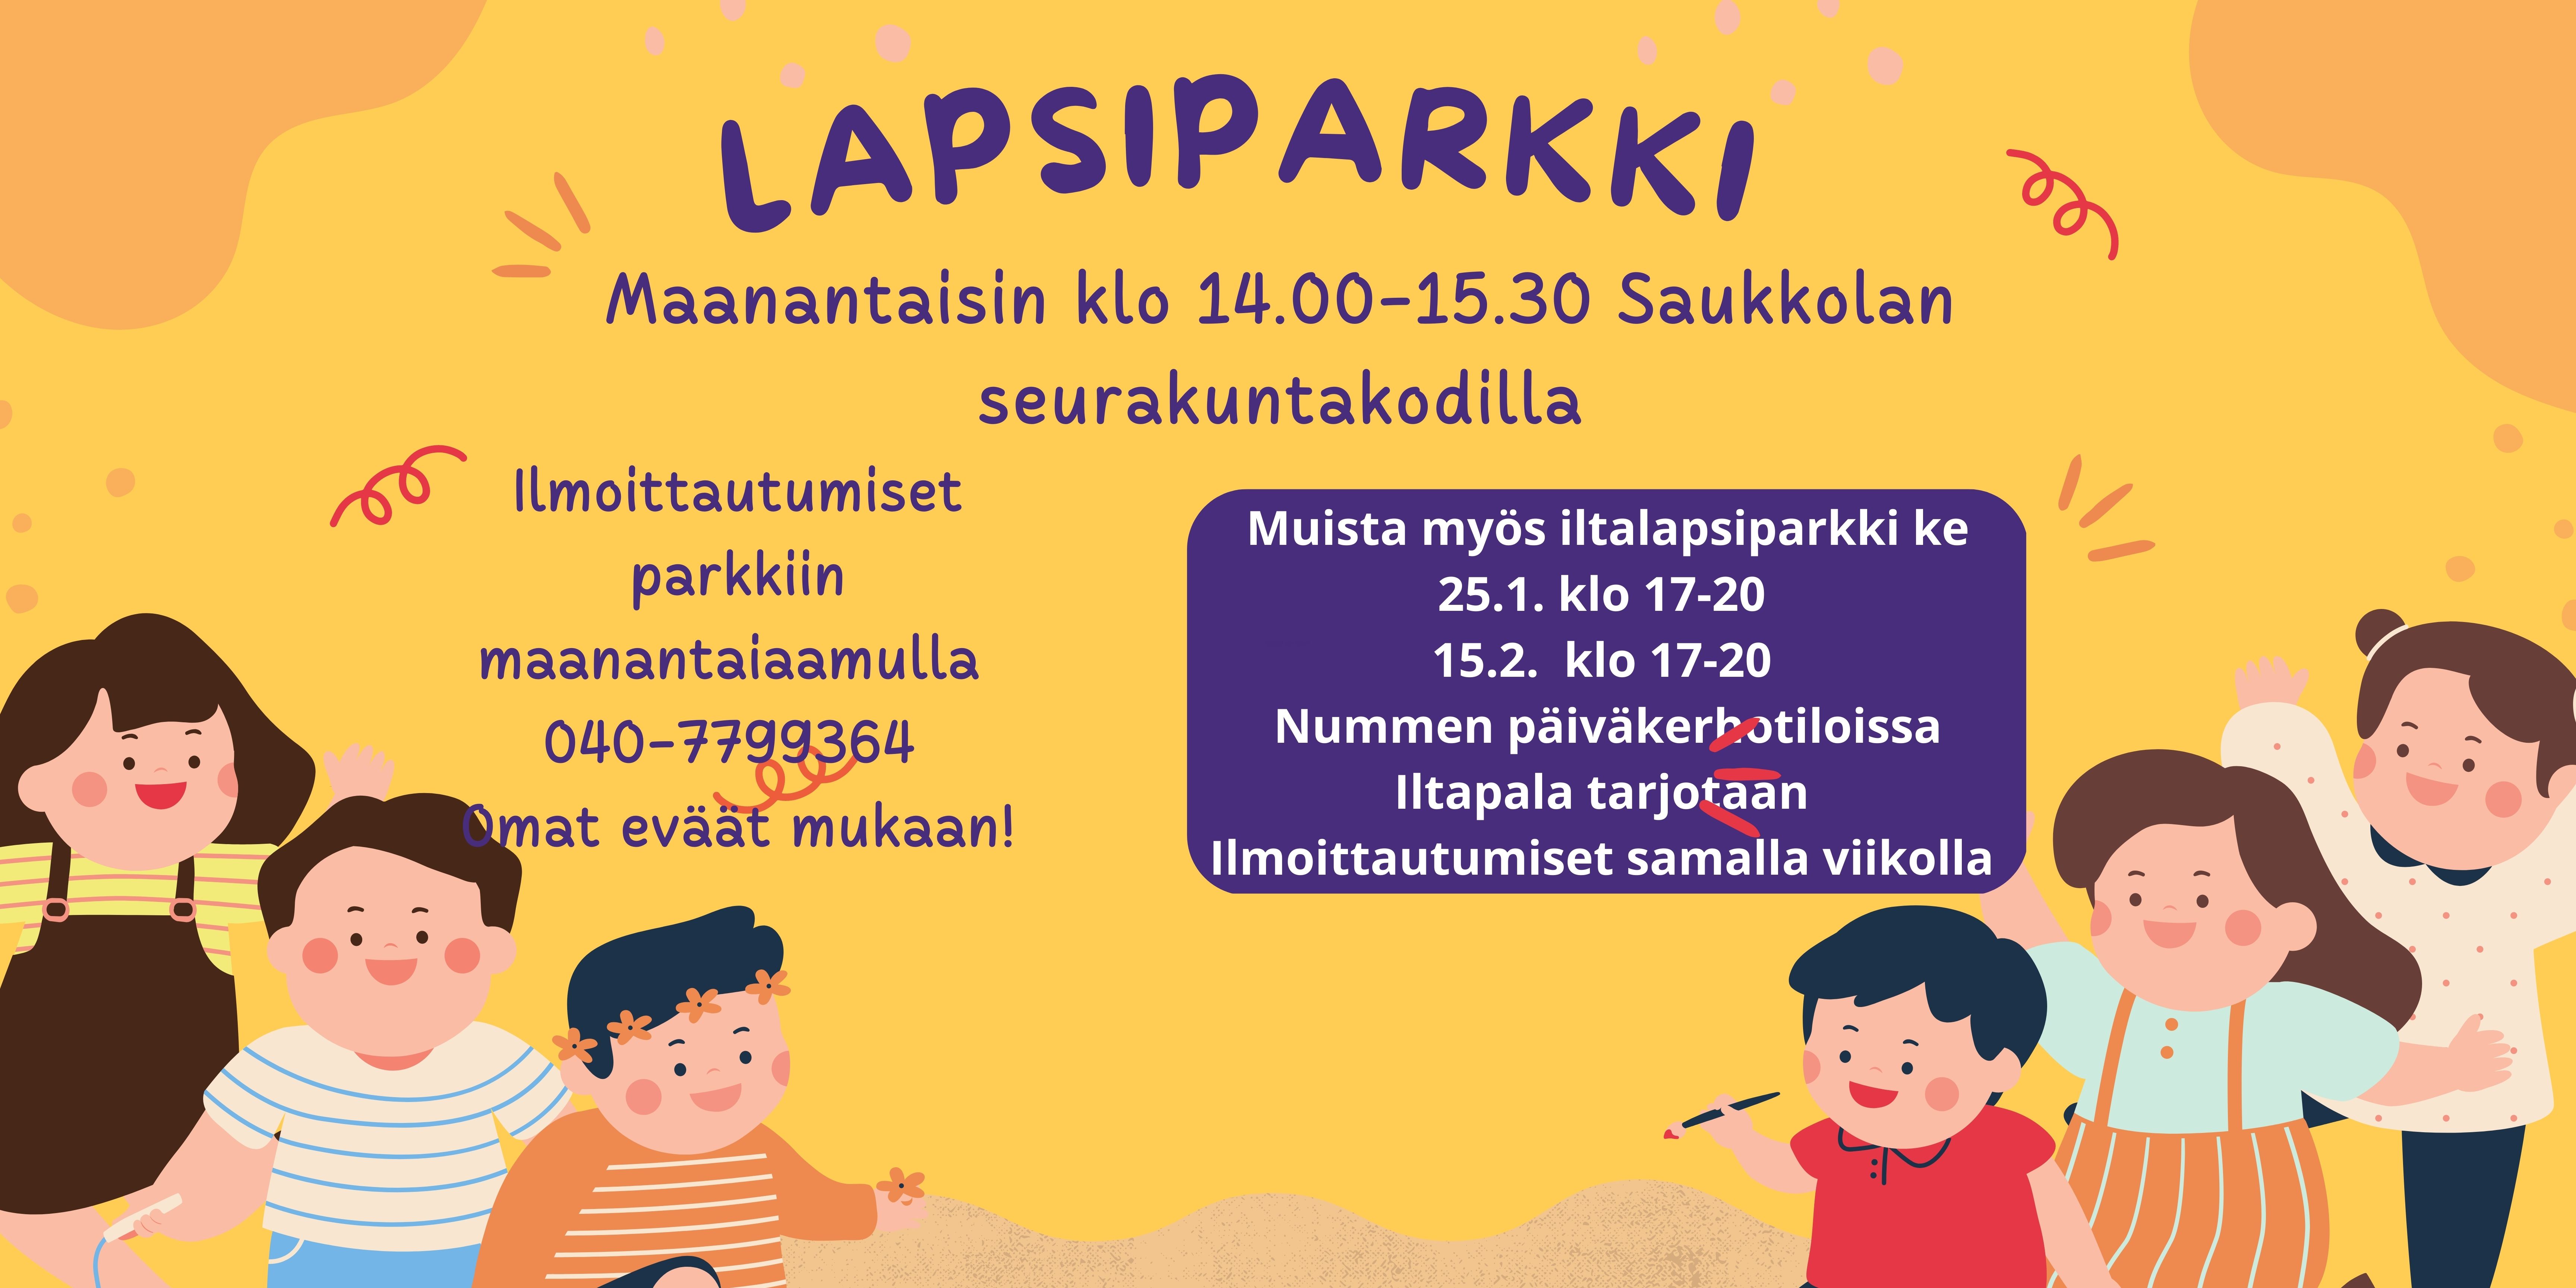 Lapsiparkki ma klo 14-15.30 Saukkola seurakuntakoti. Iltaparkki Nummella 25.1. ja 15.2. klo 17-20.